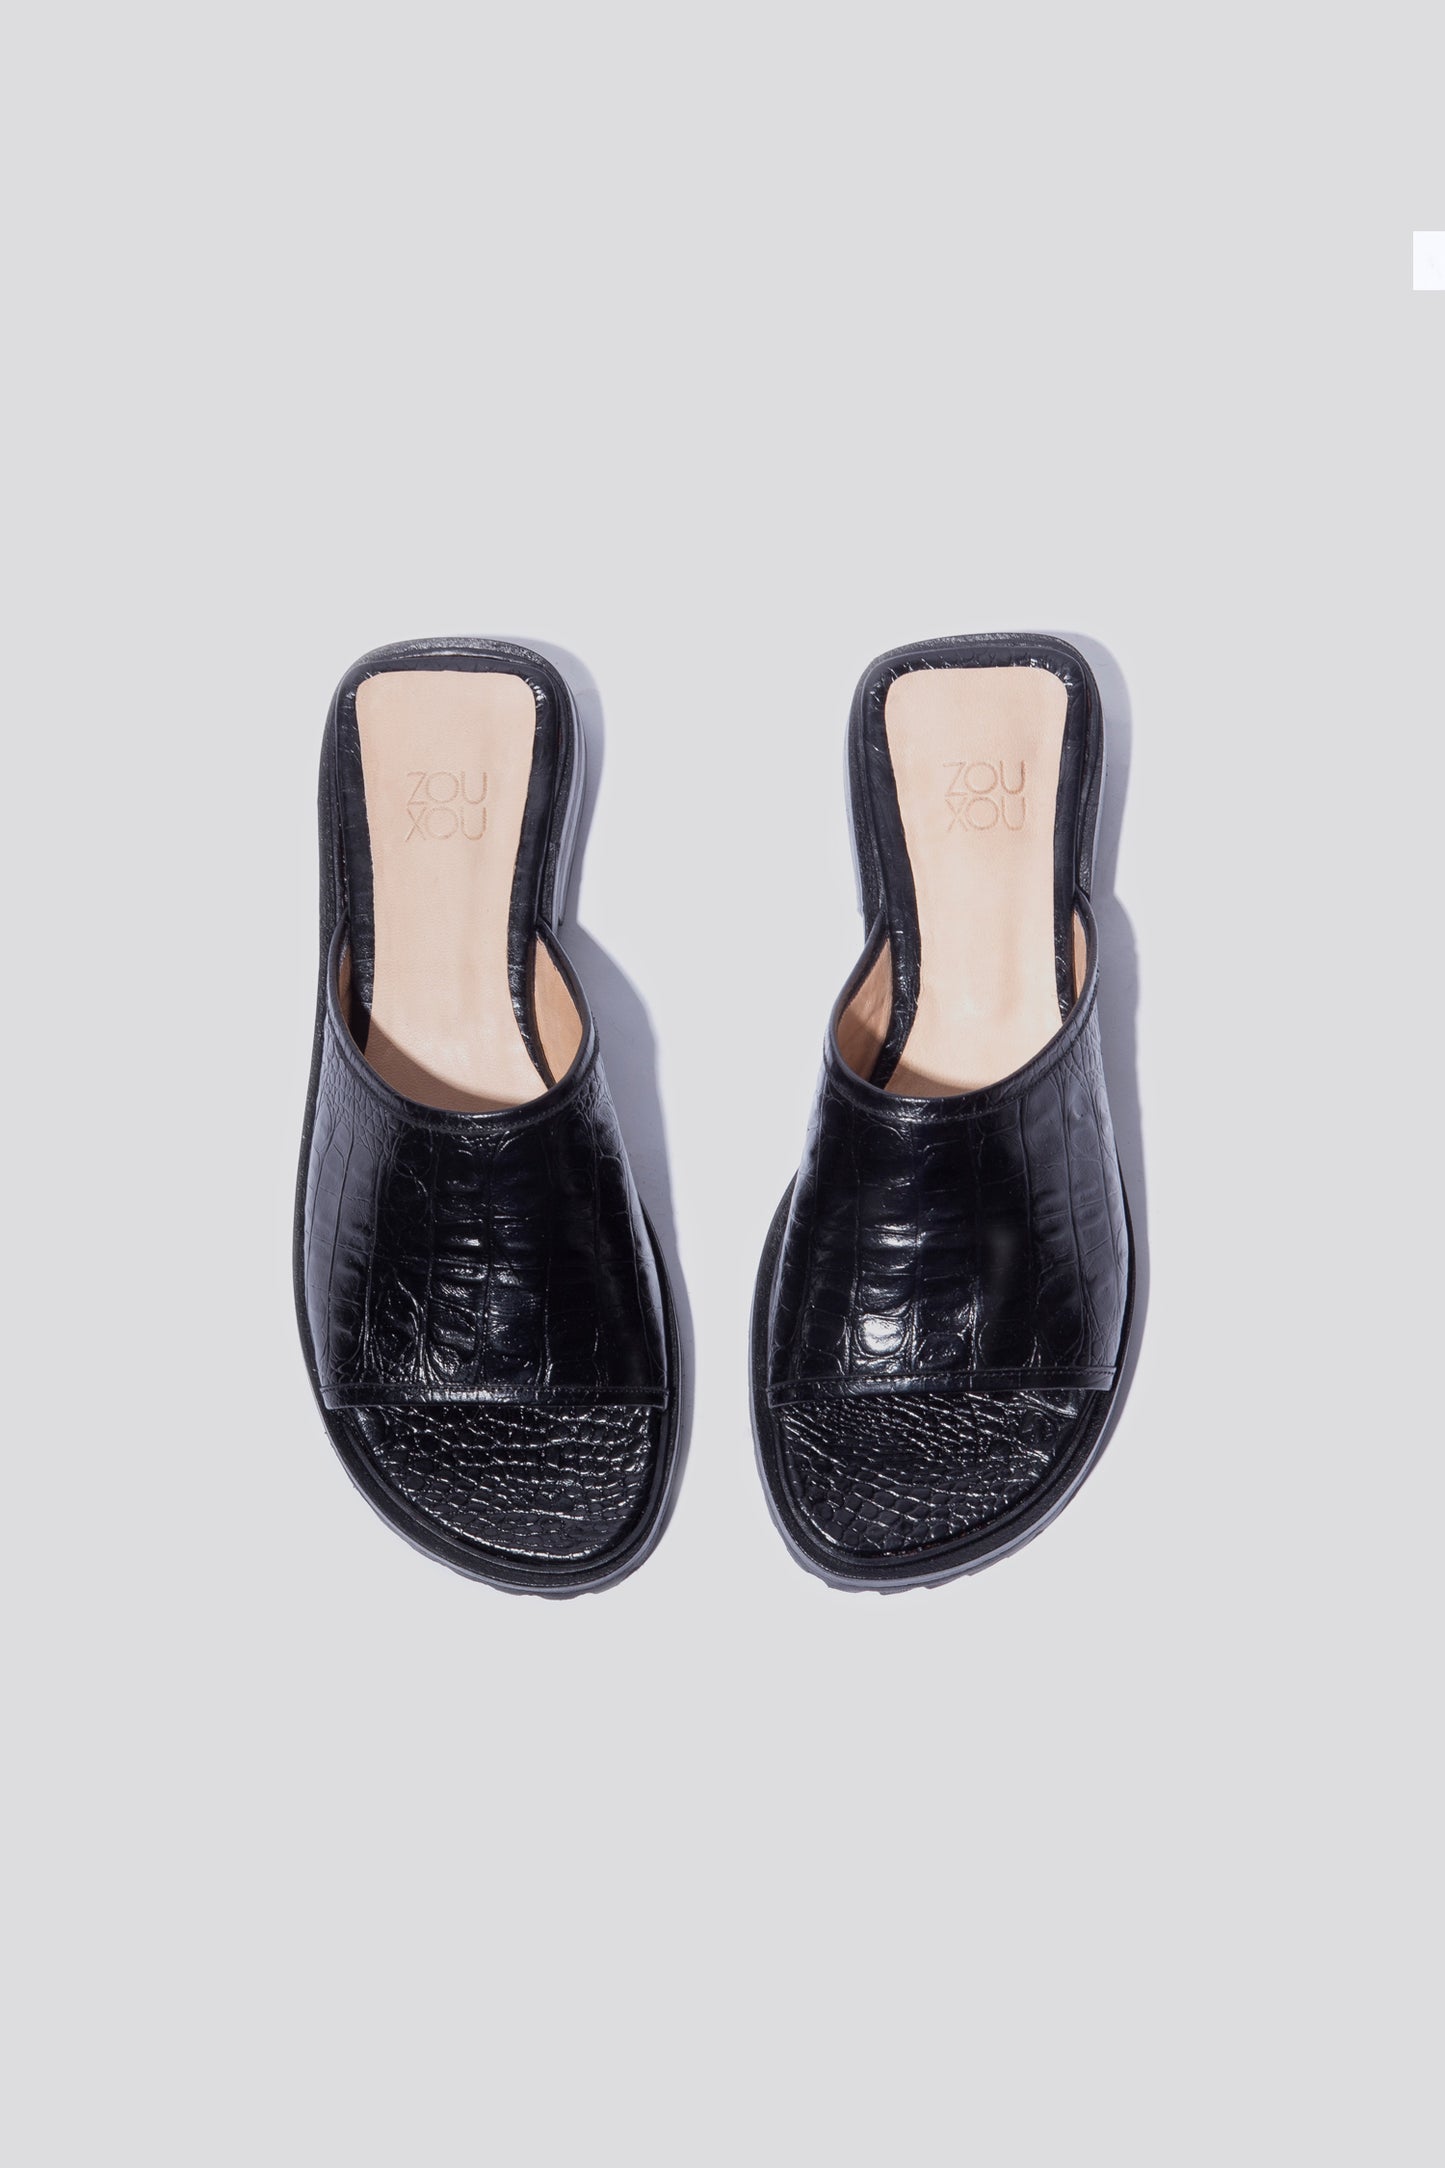 Pileta Sport Slide in Black Croc-Effect Leather